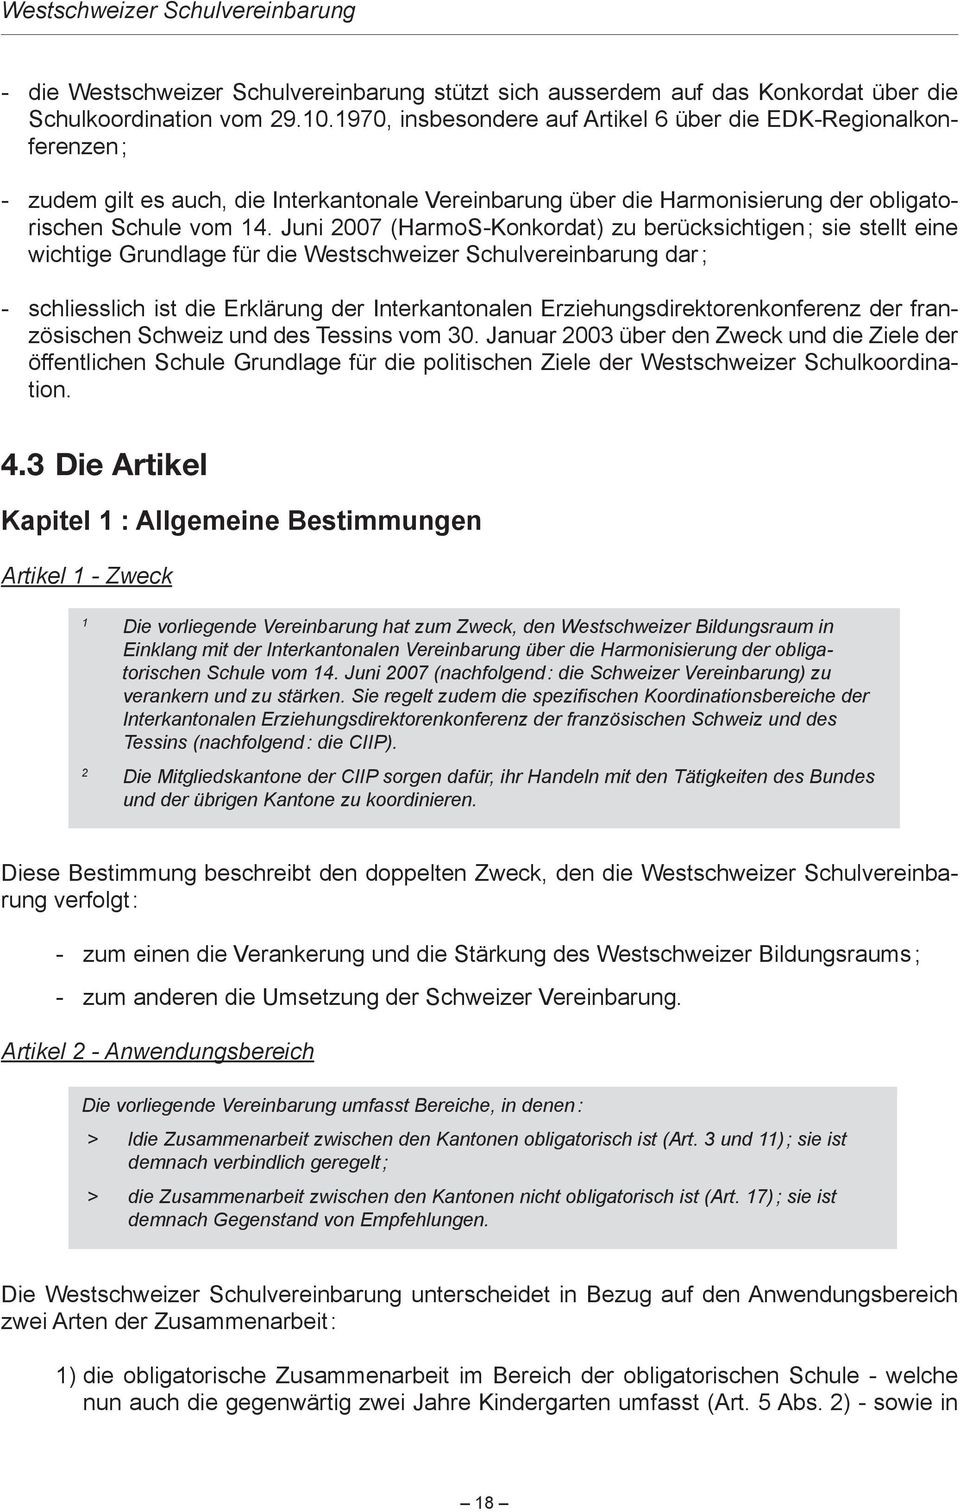 juni007(harmos-konkordat)zuberücksichtigen;siestellteine wichtigegrundlagefürdiewestschweizerschulvereinbarungdar; 4.